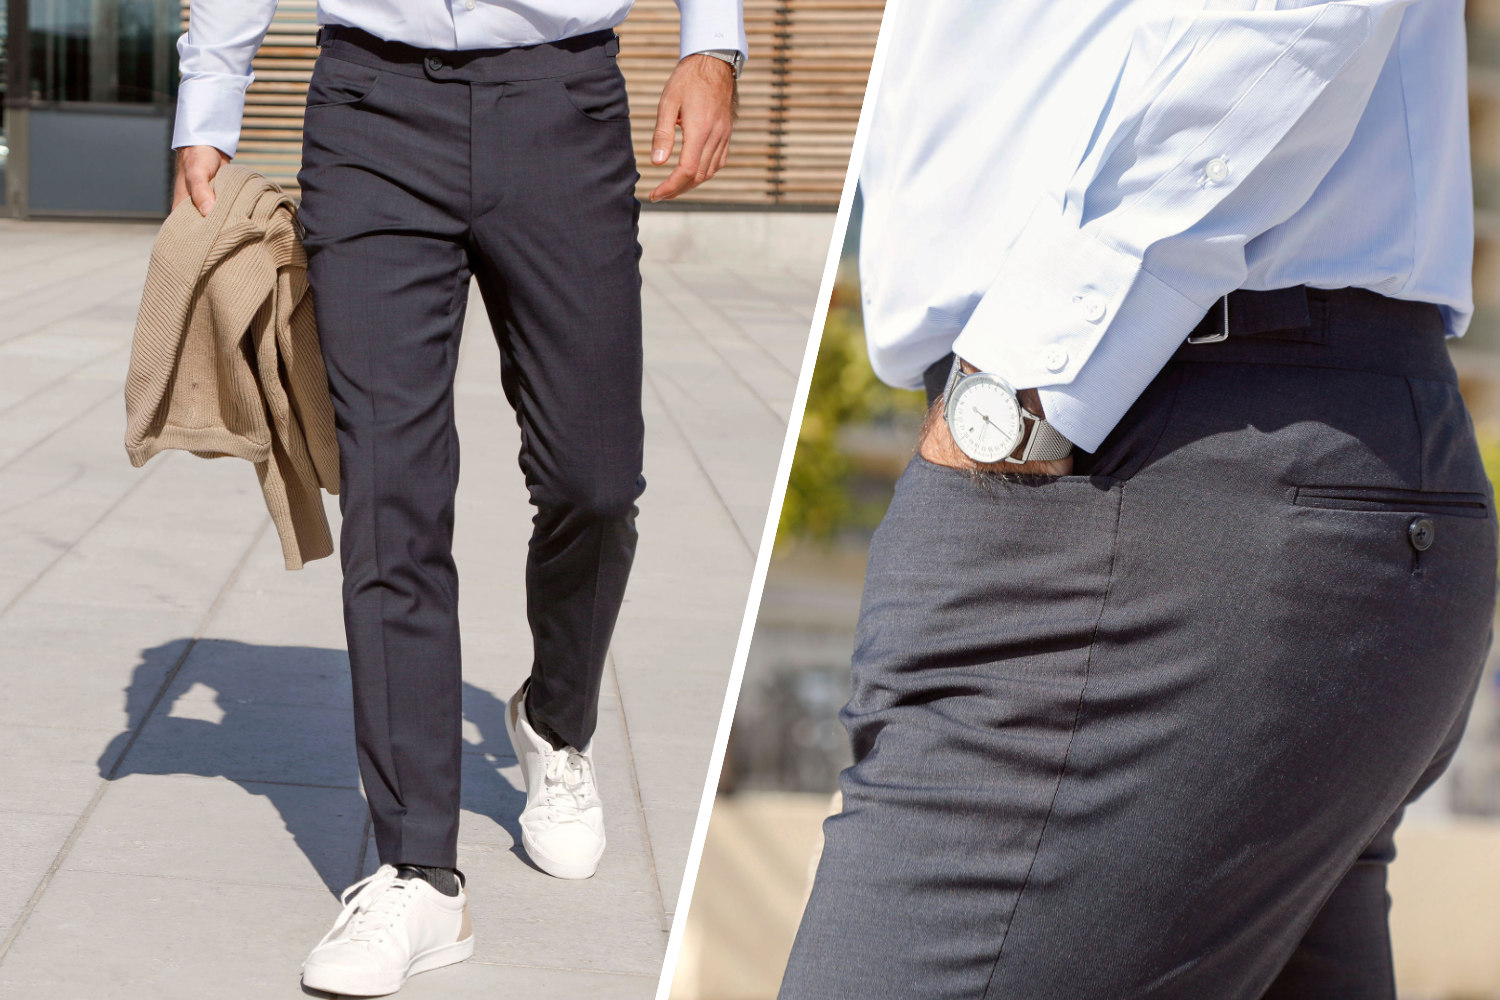 Comment bien porter un pantalon classique homme